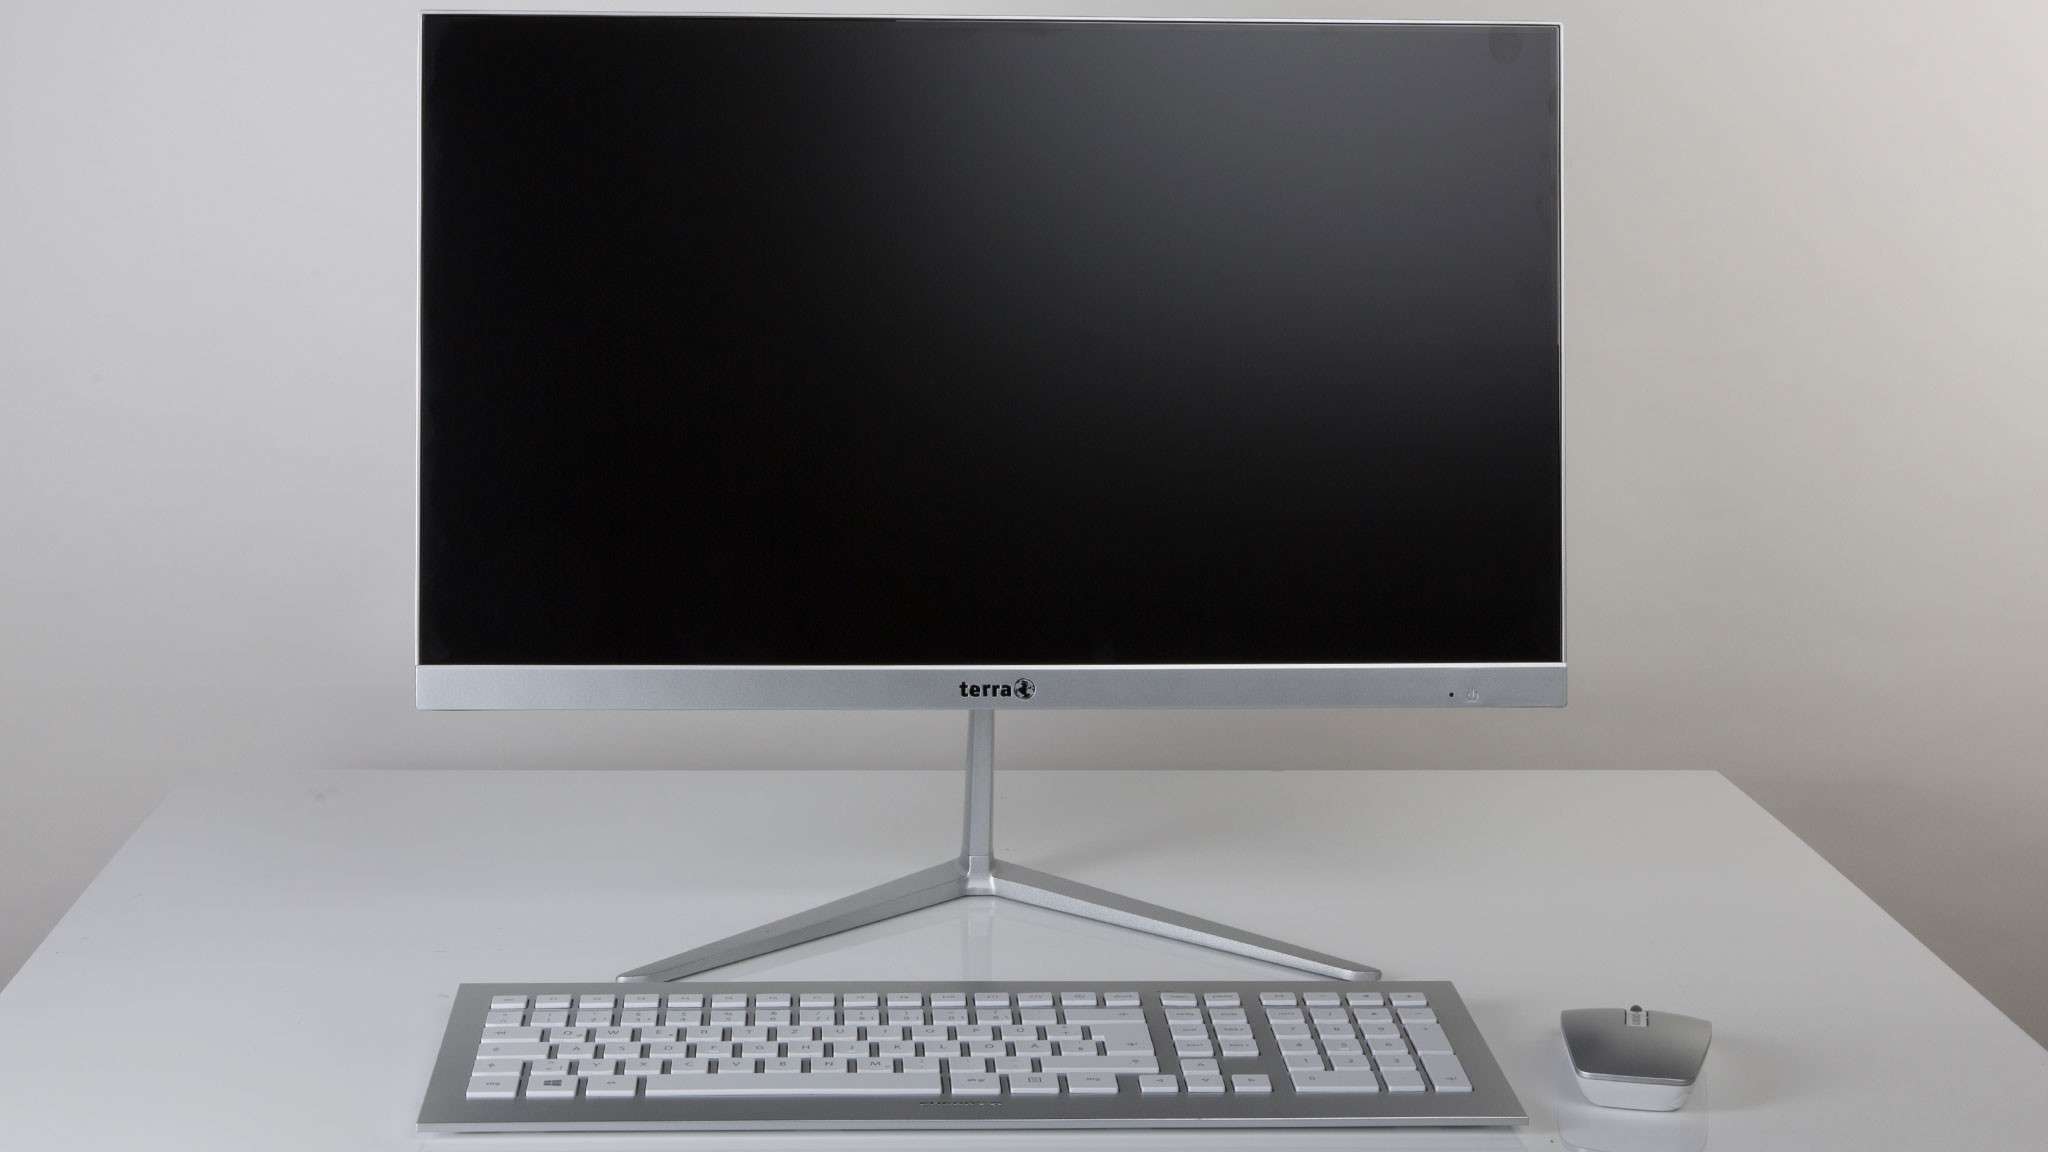 Wortmann Terra All-in-One PC 2400 w teście: Jeden do domowego biura?